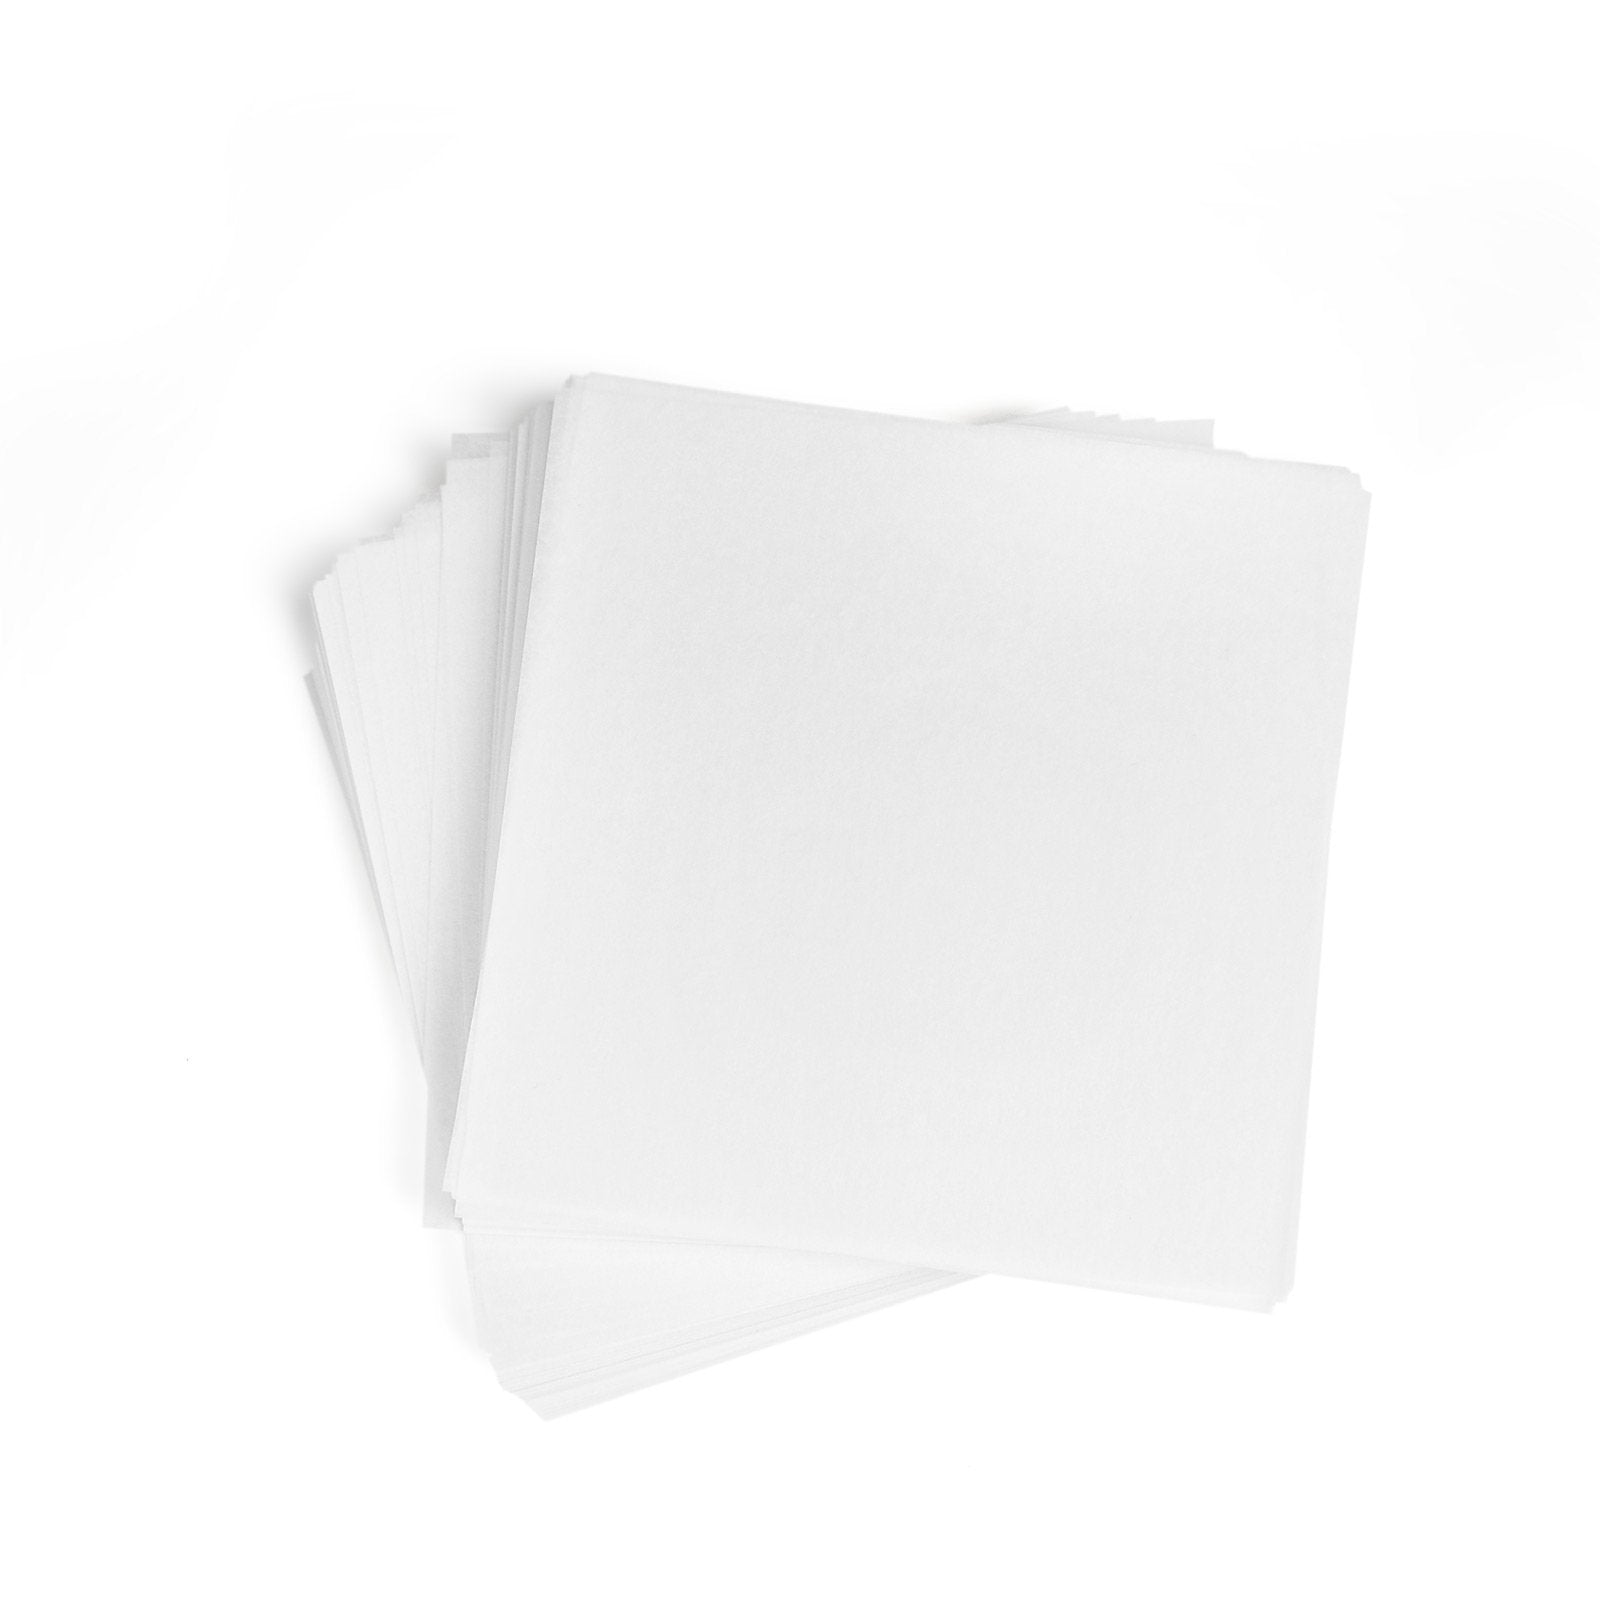 Oil Slick Non-Stick PRECUT parchment Paper 4.5x 4.5